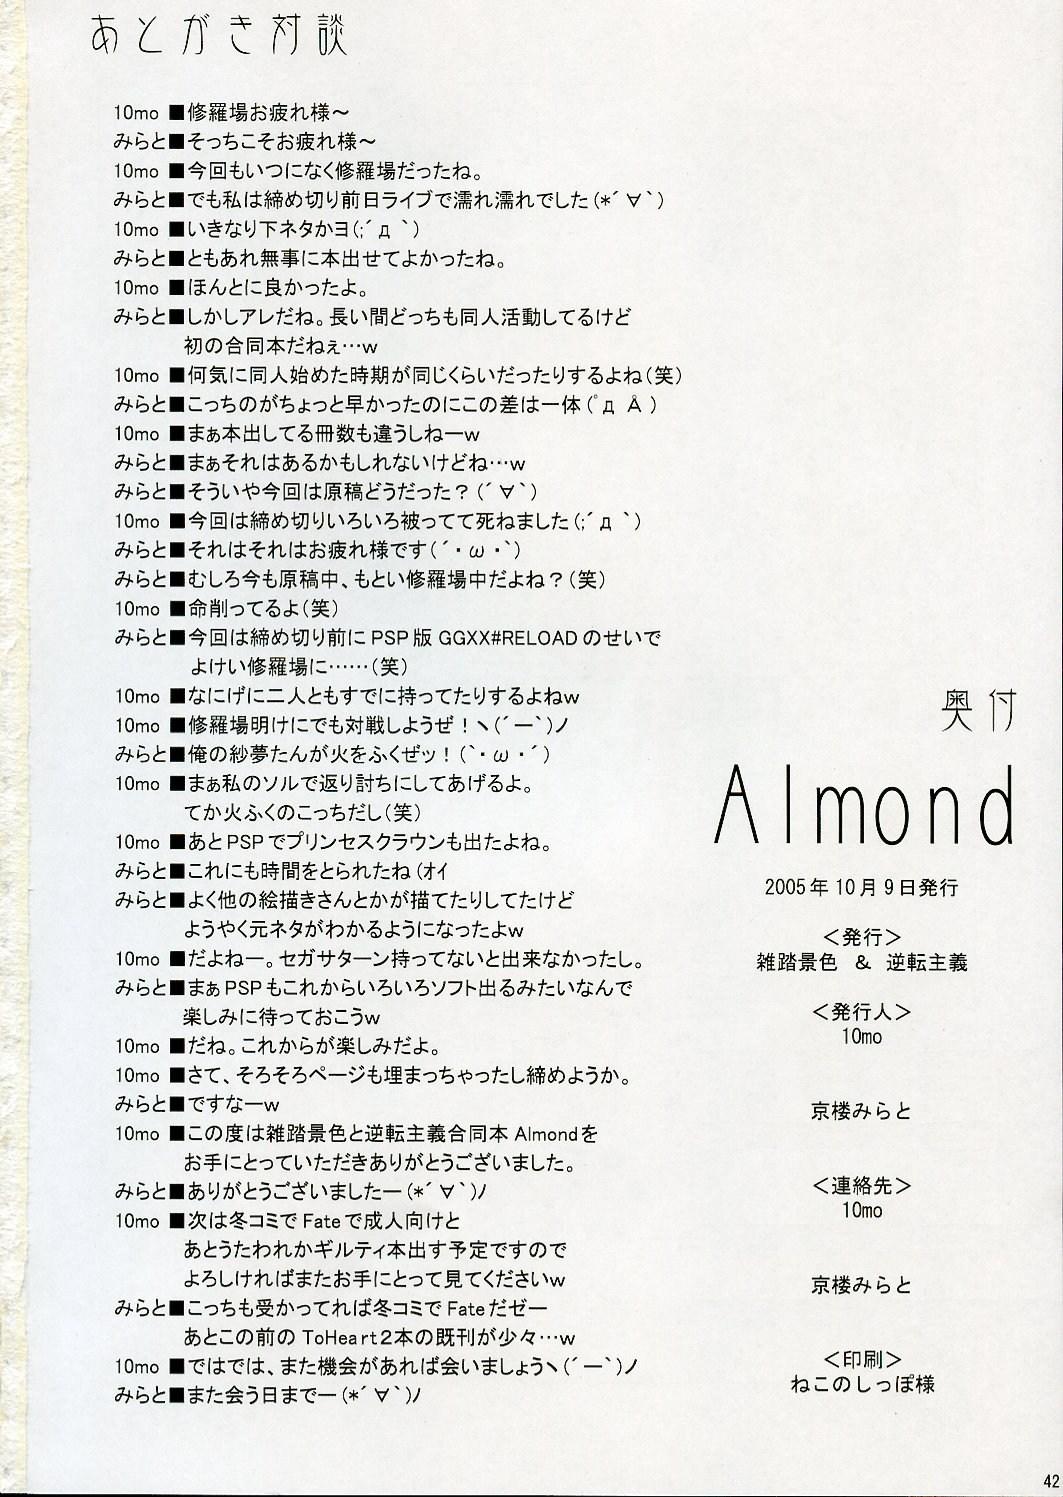 Almond 40